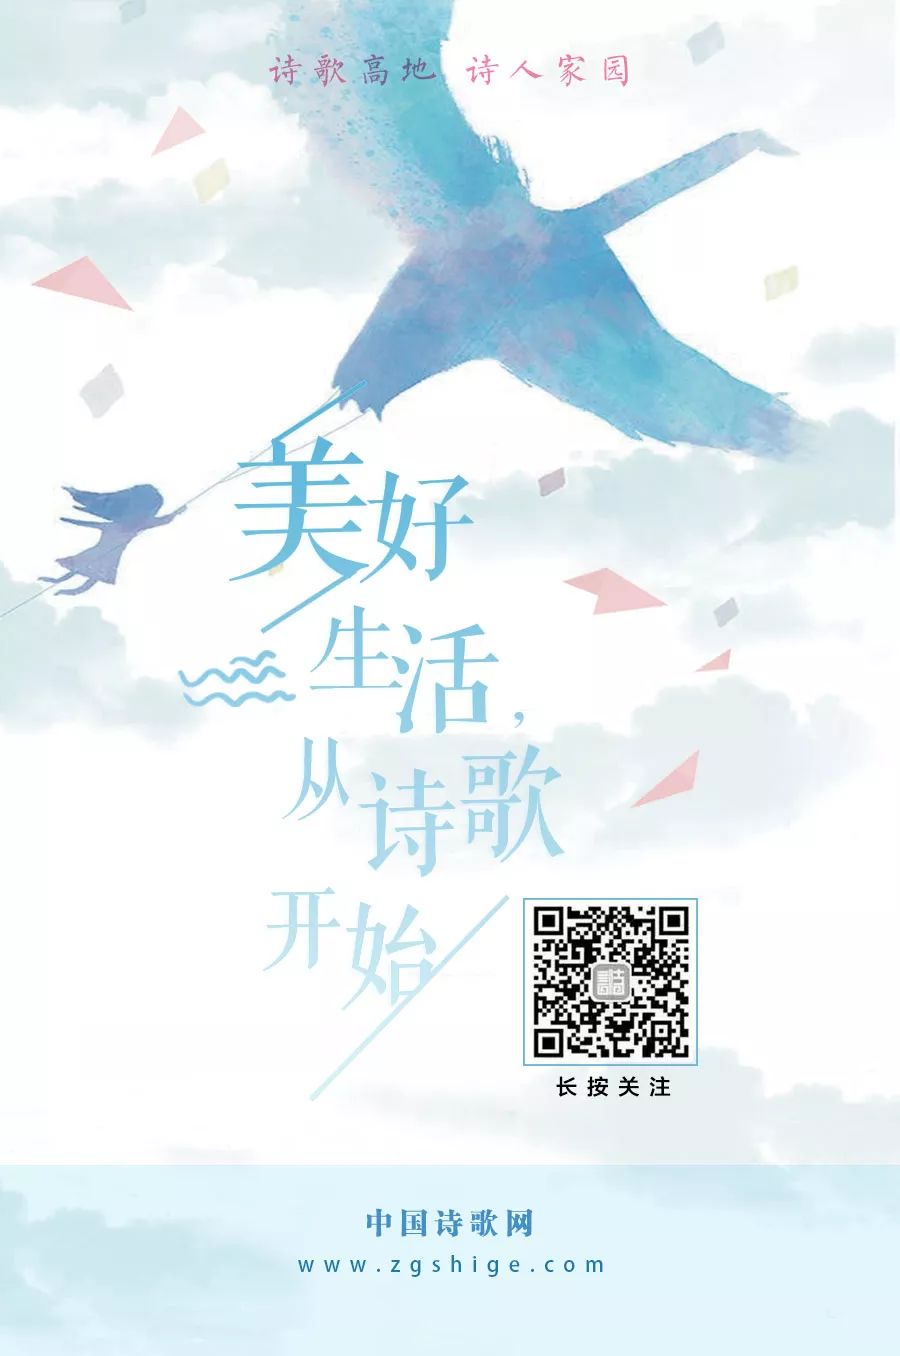 中国诗歌网QQ群诗友9月作品选